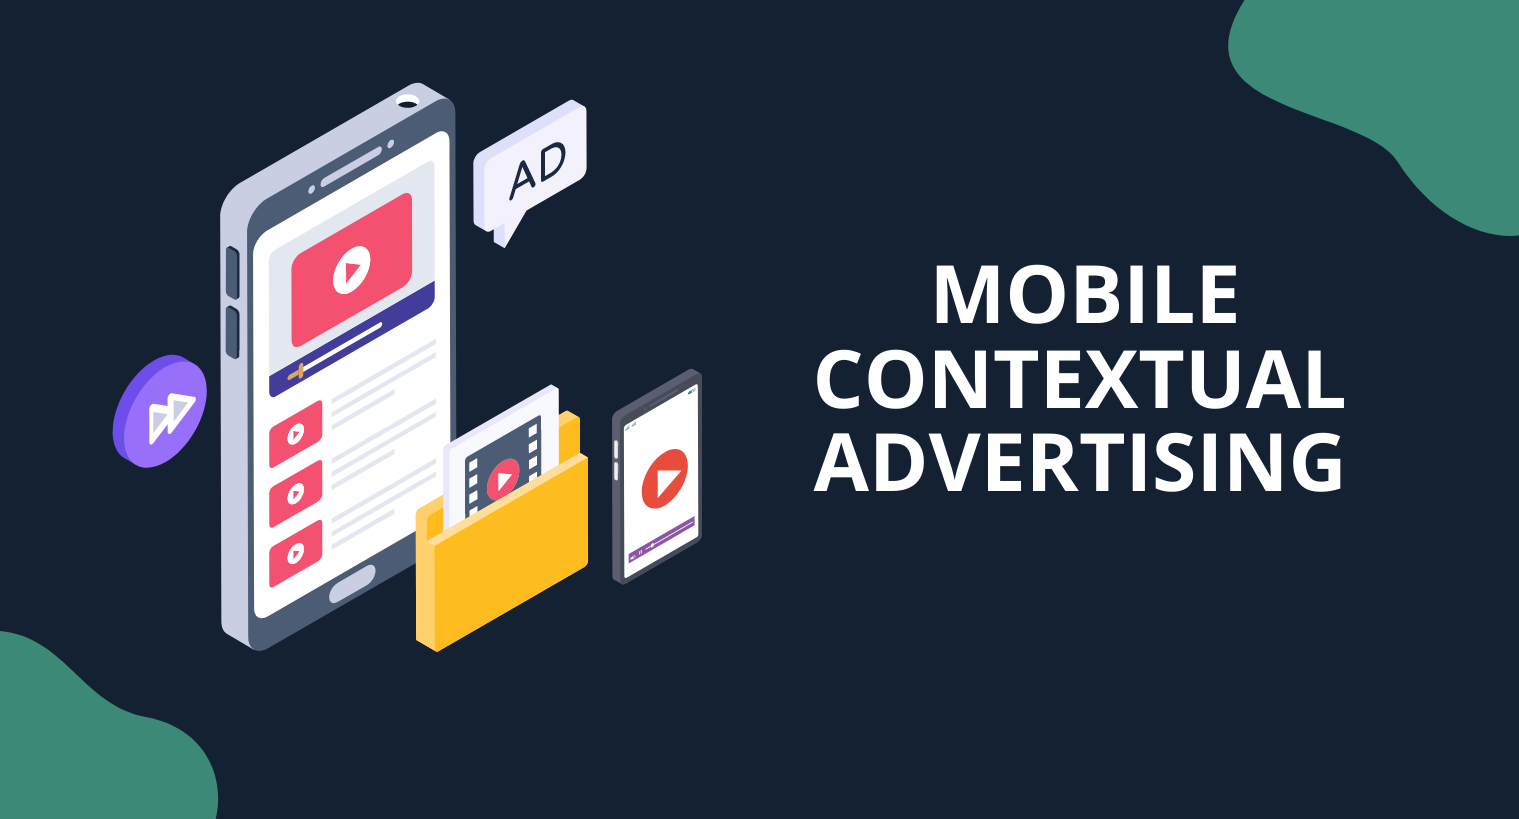 Mobile contextual advertising